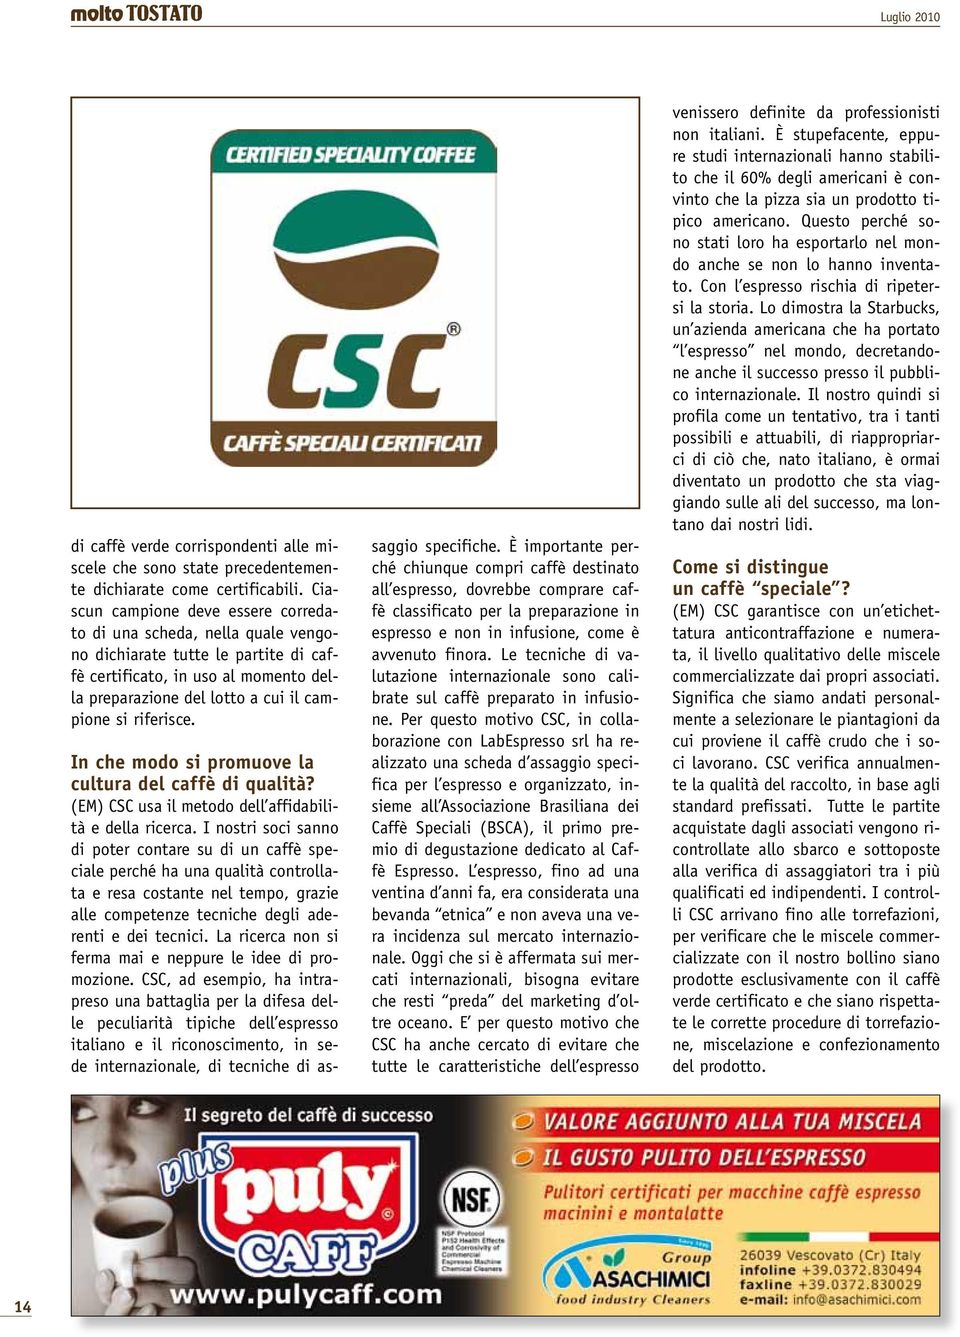 riferisce. In che modo si promuove la cultura del caffè di qualità? (EM) CSC usa il metodo dell affidabilità e della ricerca.